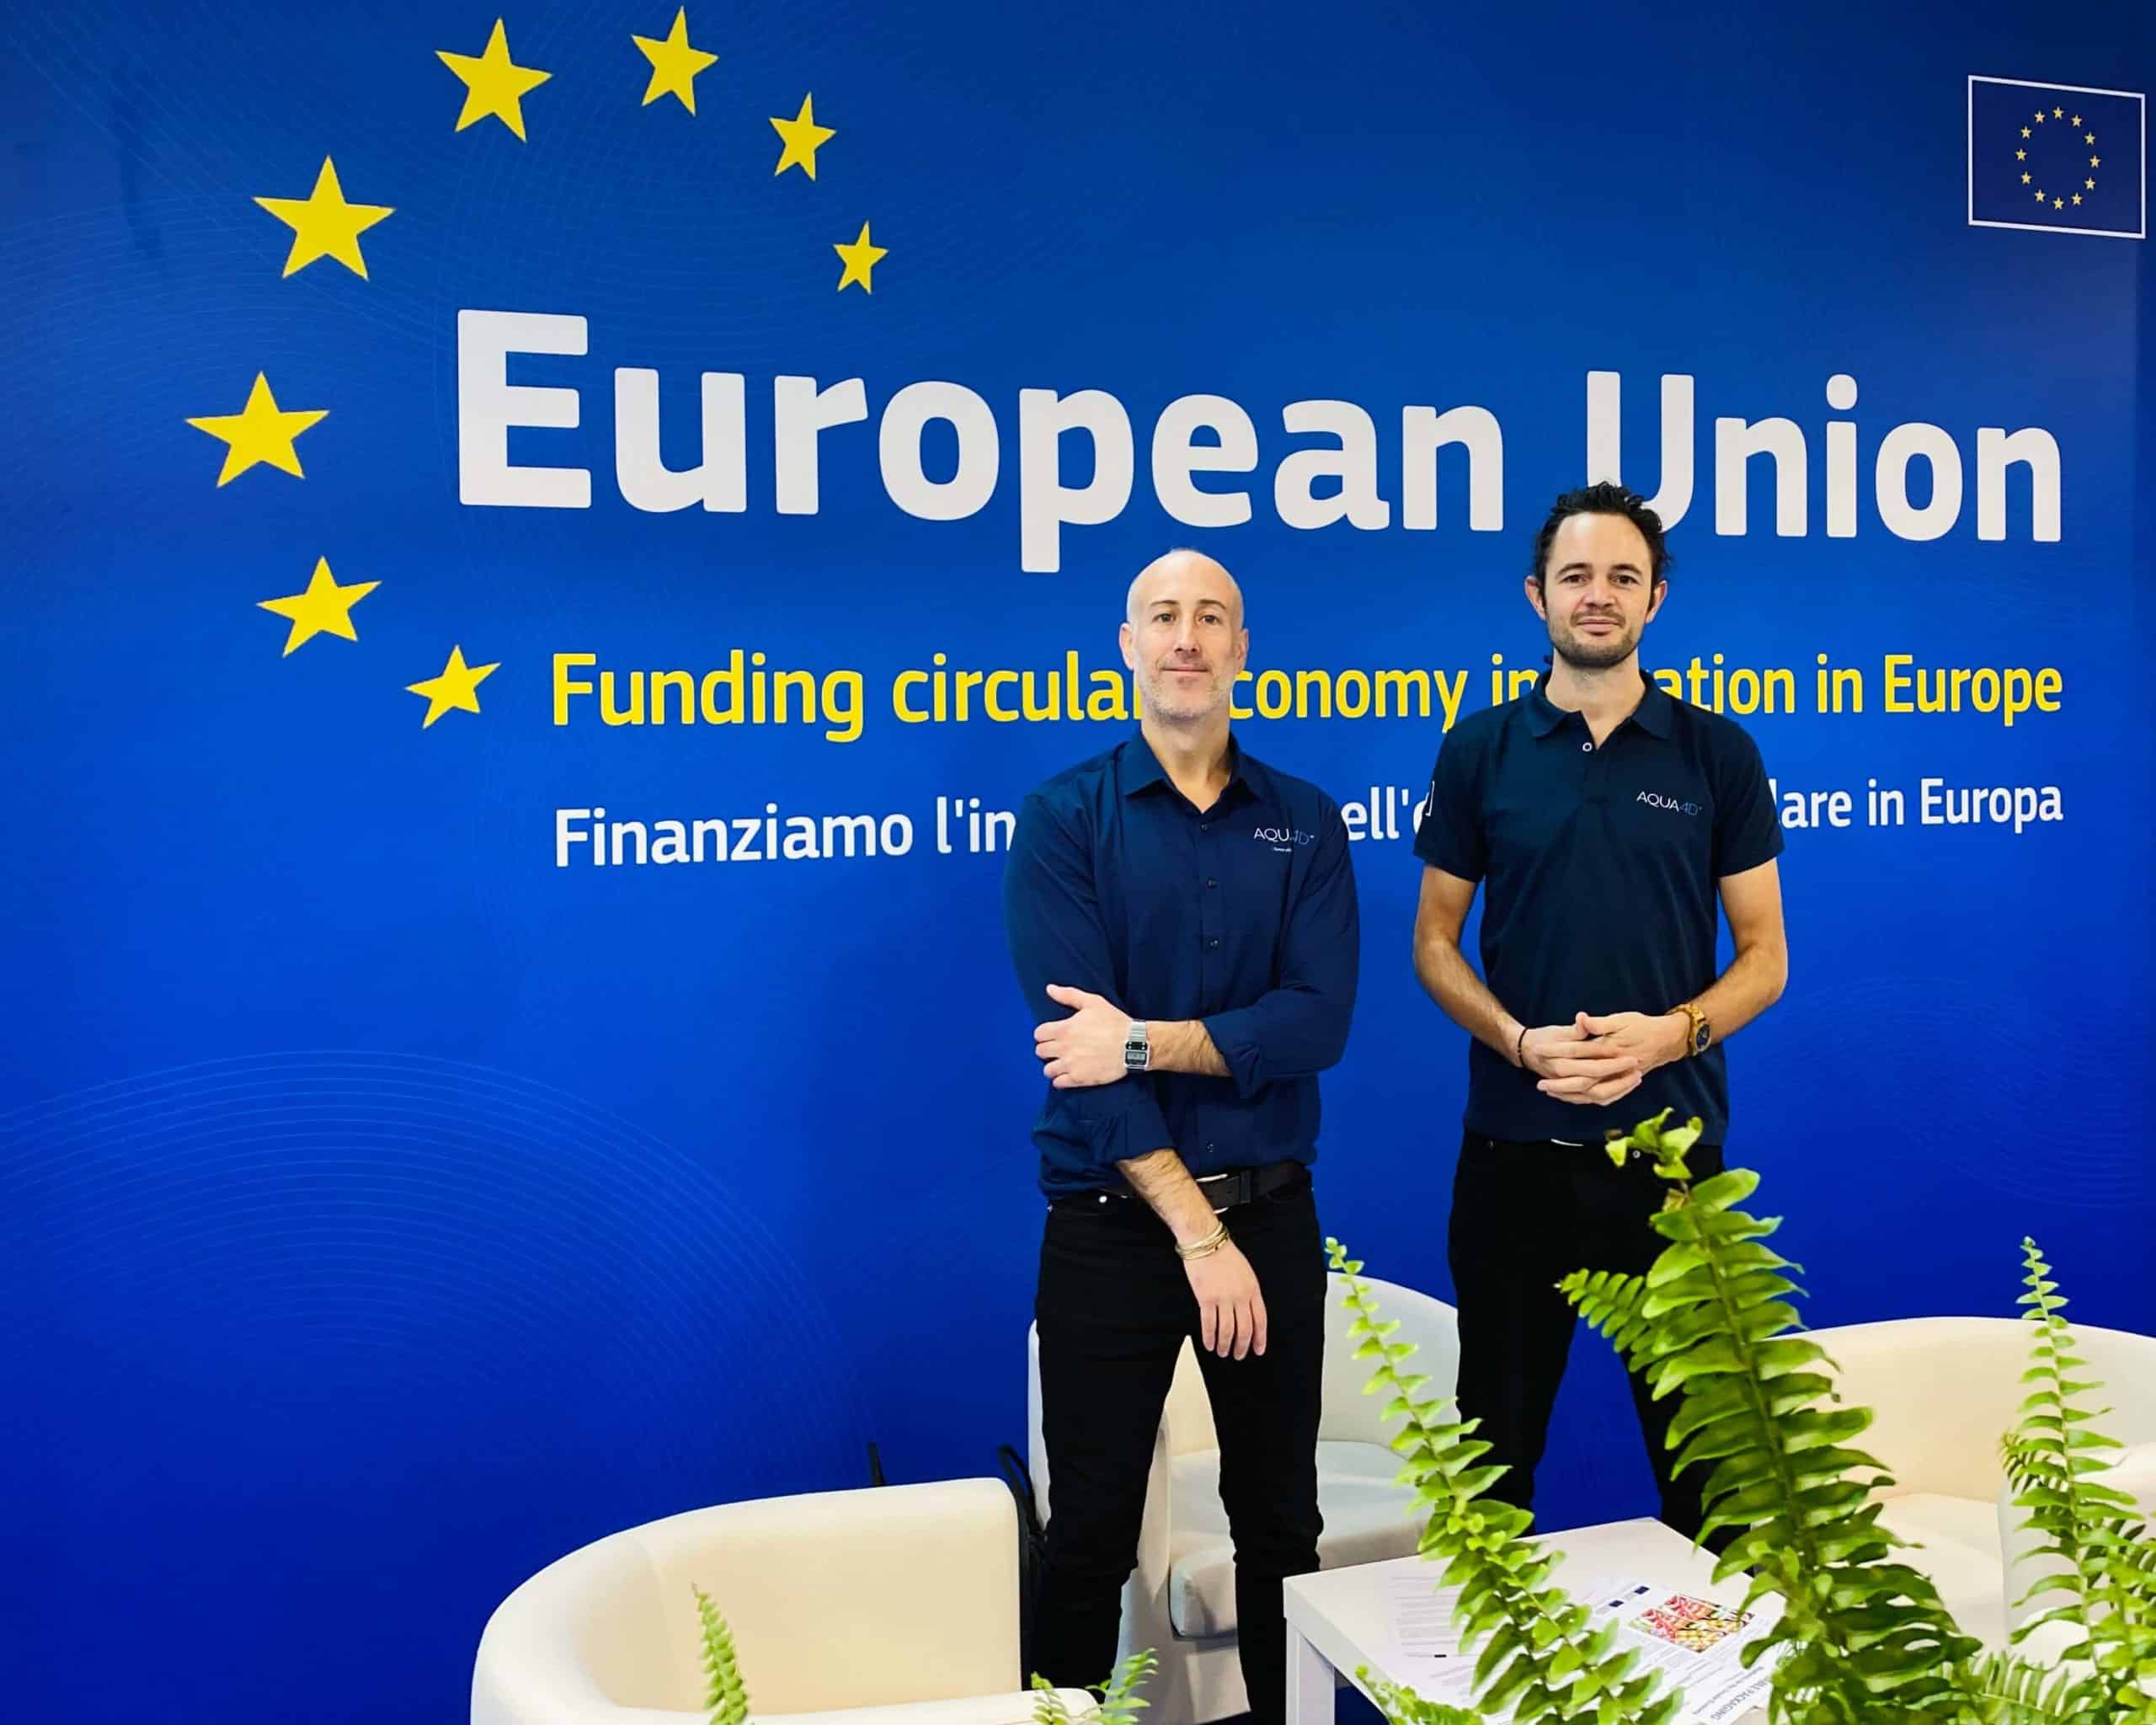 javier meyer und chris thomas vertreten AQUA4D auf der Veranstaltung der Europäischen Kommission EIC in Rimini, Italien